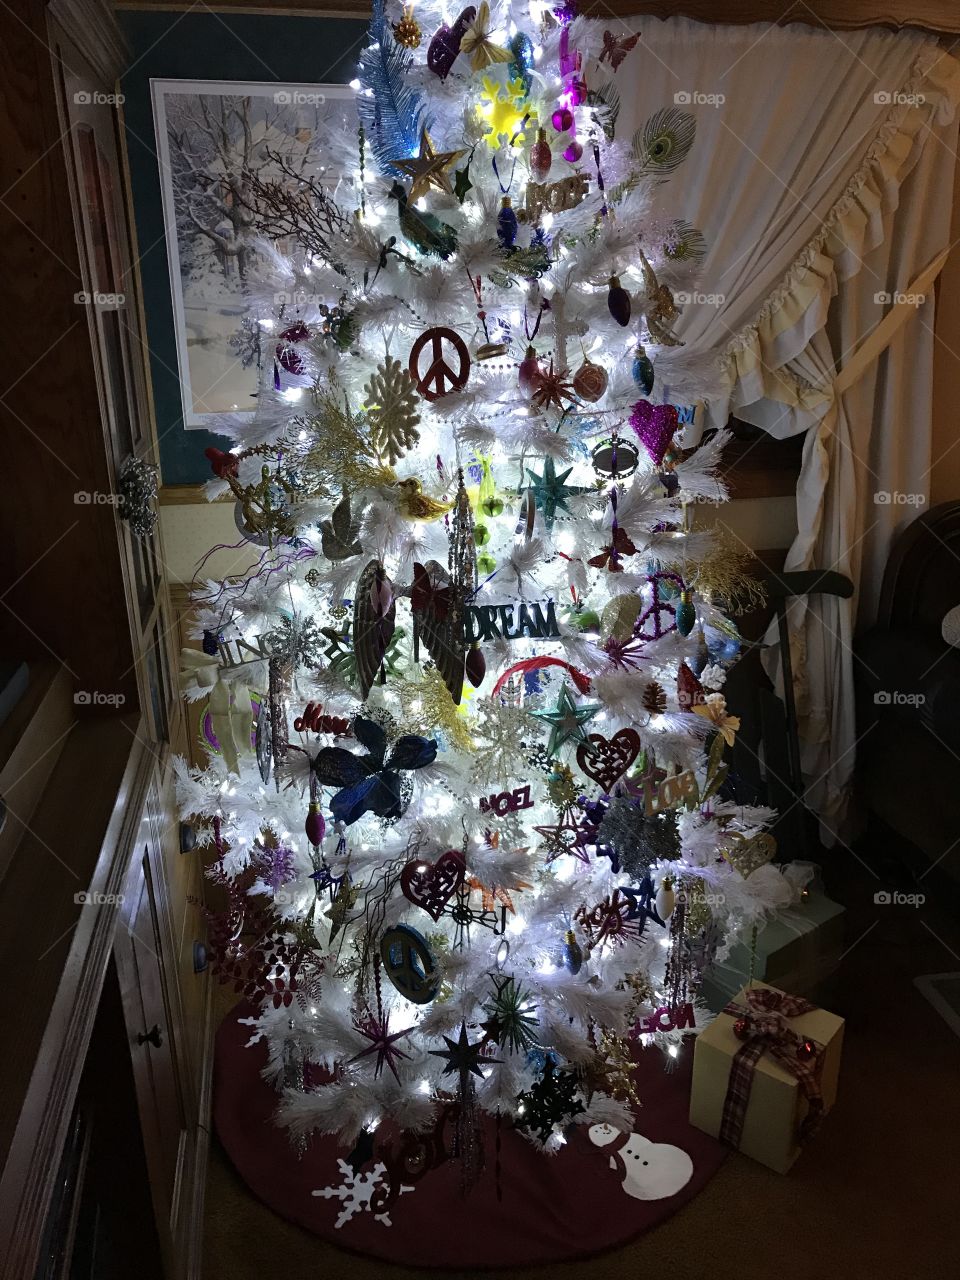 My Christmas tree 